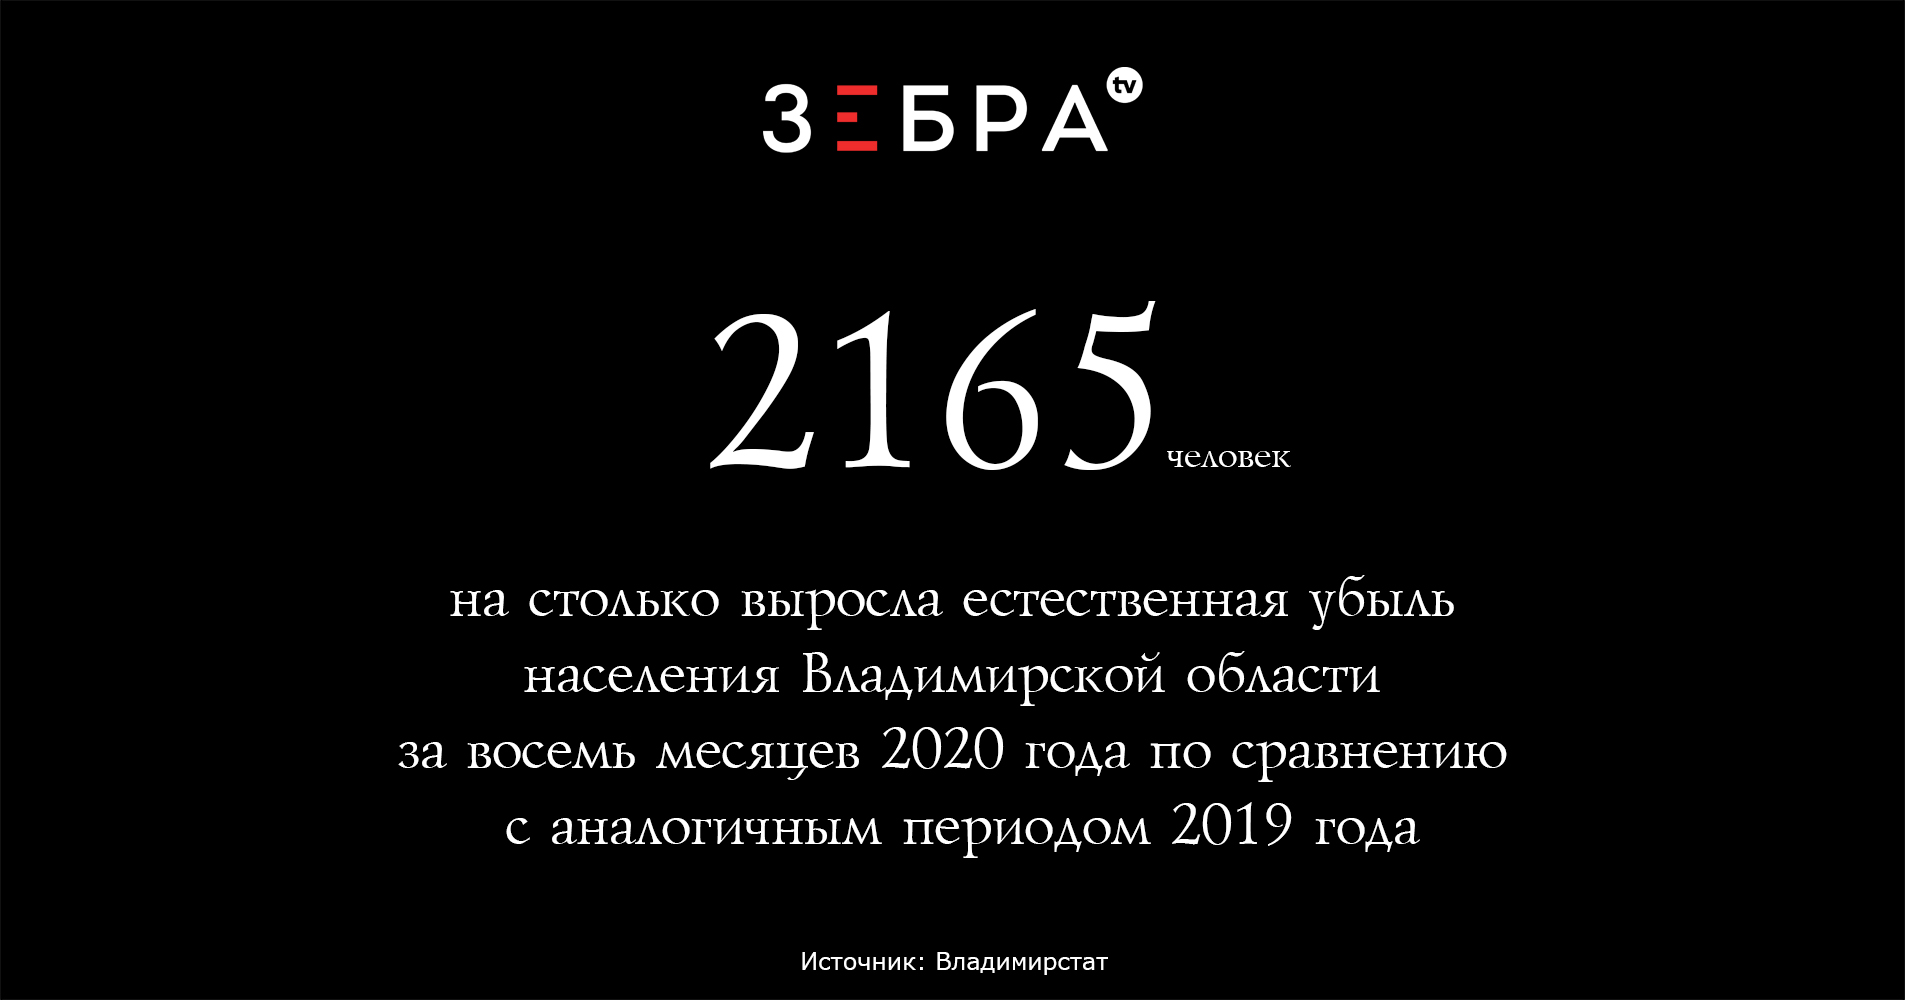 2165 человекна столько выросла естественная убыль населения Владимирской области за восемь месяцев 2020 года по сравнению с аналогичным периодом 2019 годаИсточник: Владимирстат